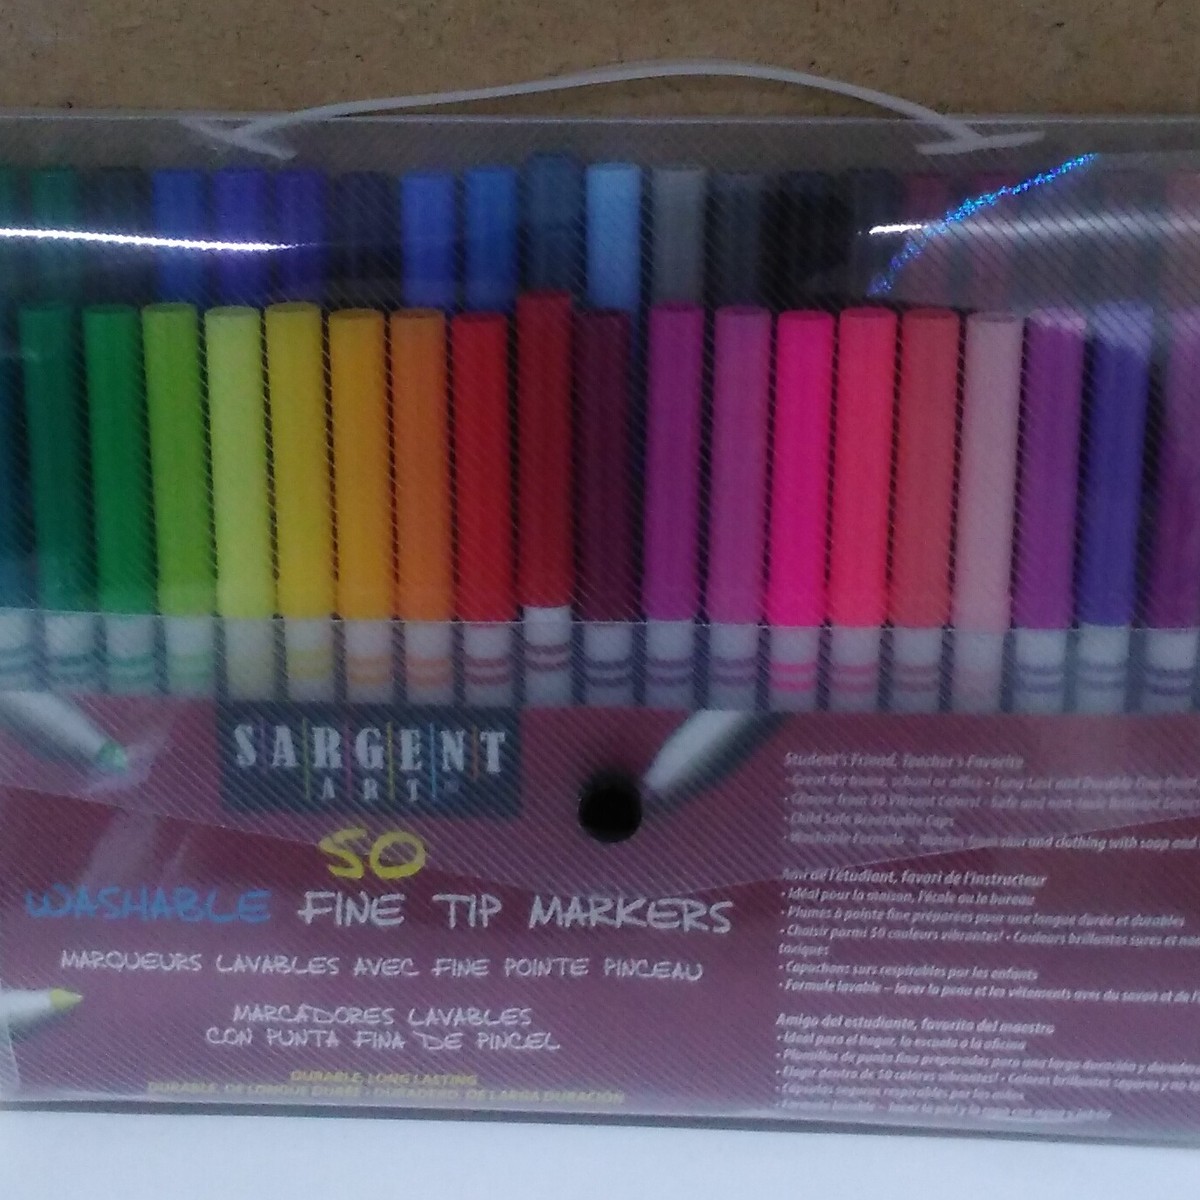 Sargent Art 50 Washable Fine Tip Markers